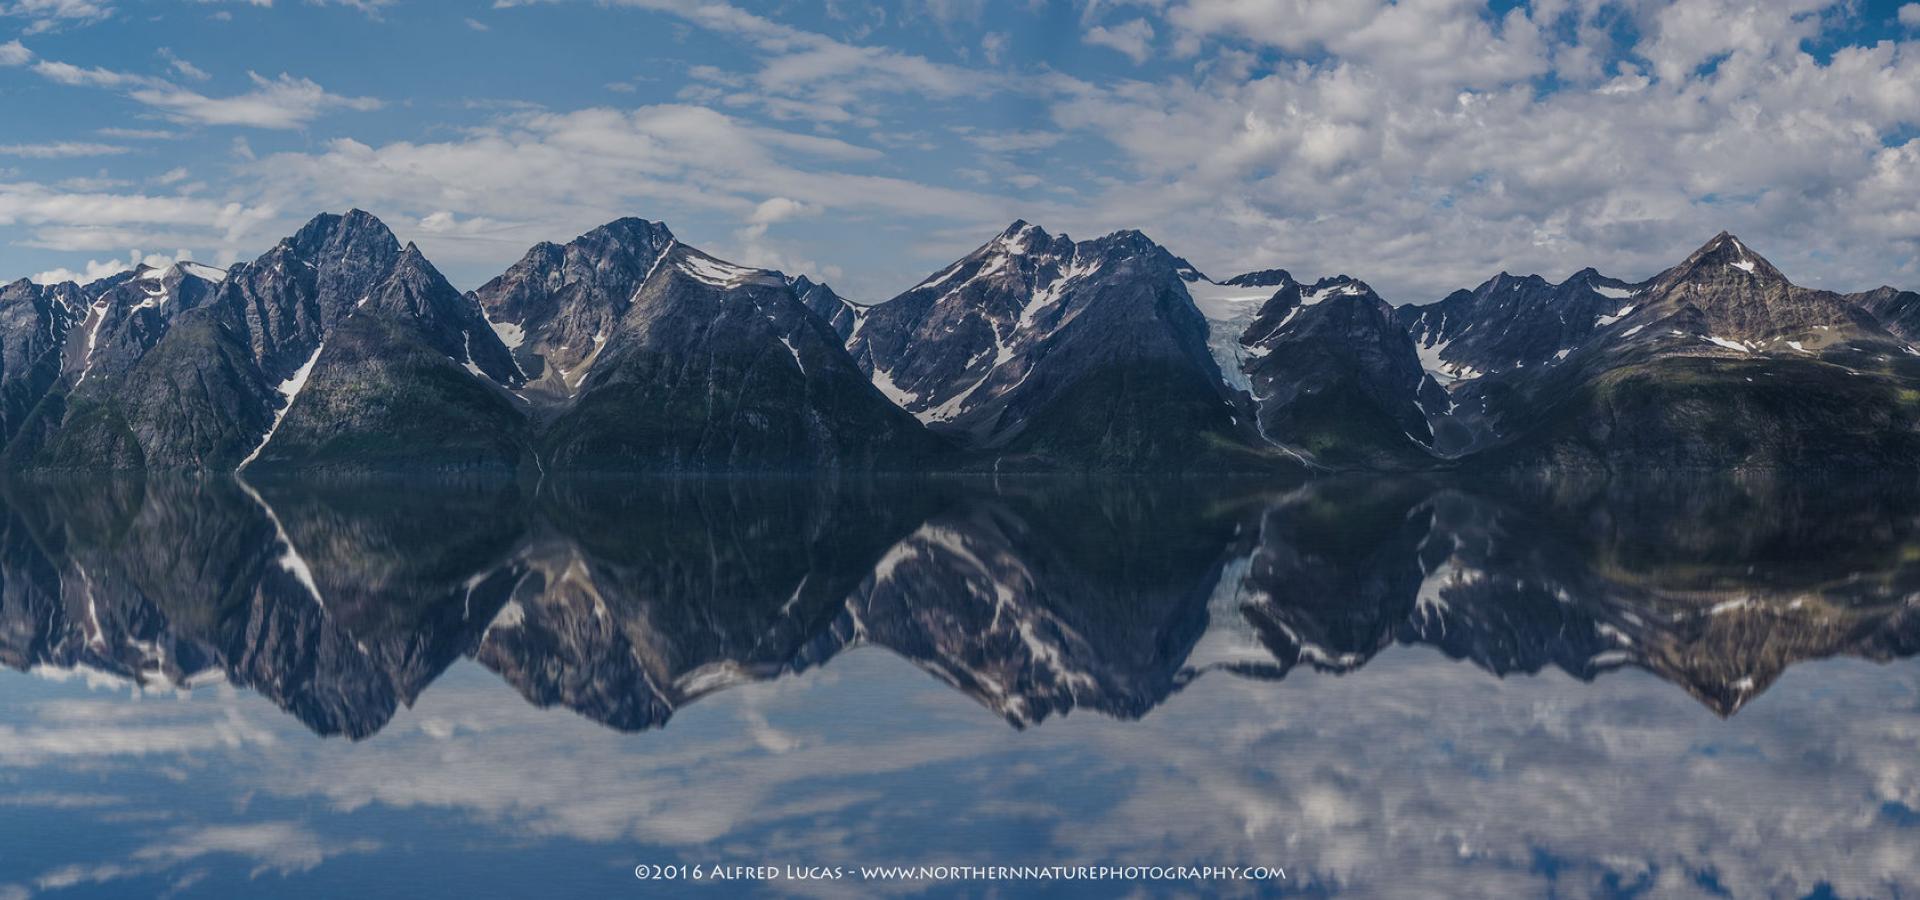 The Lyngen Alps mirroring in the Lyngenfjord